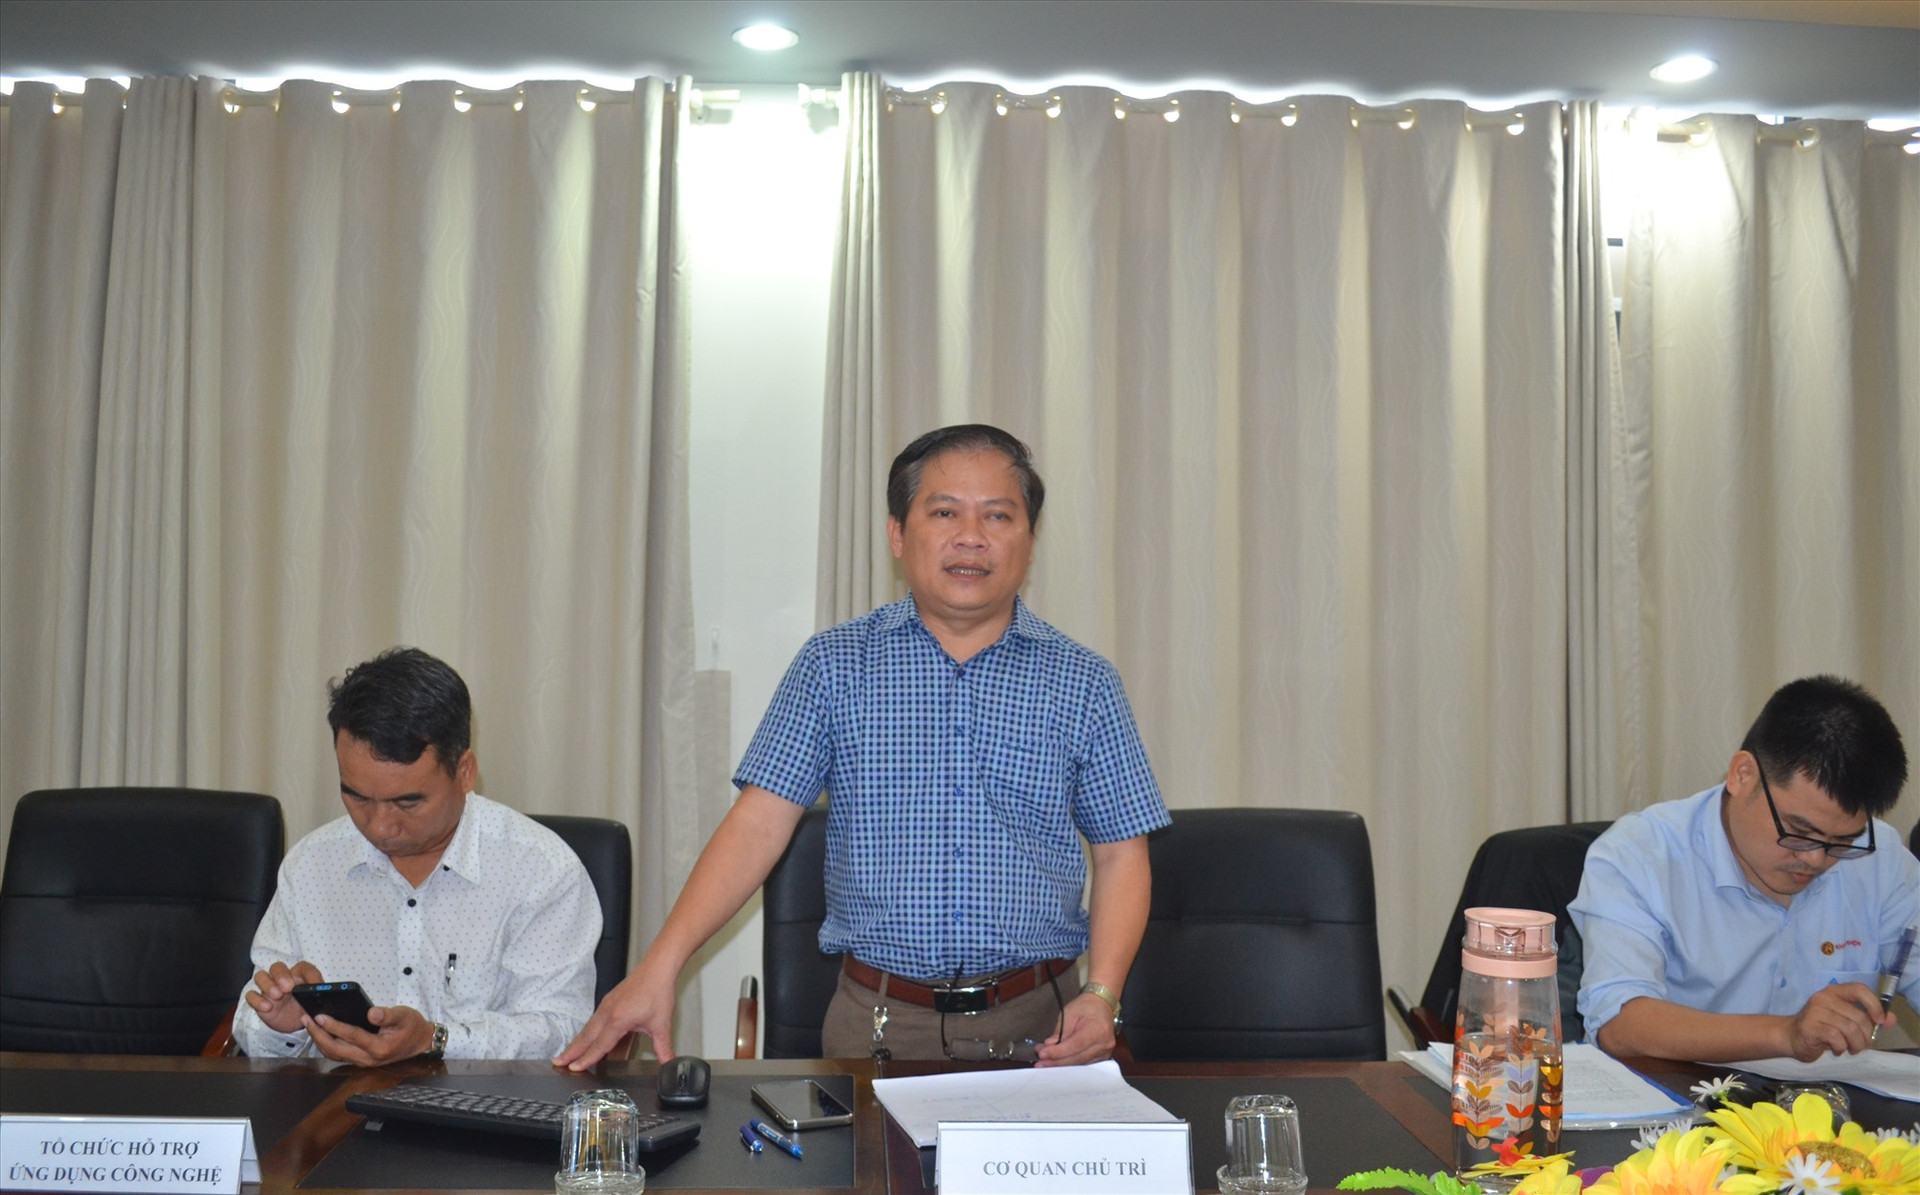 Ông Nguyễn Hữu Hùng - Trưởng phòng Kinh tế - hạ tầng huyện Phú Ninh trình bày đề tài. Ảnh: V.S